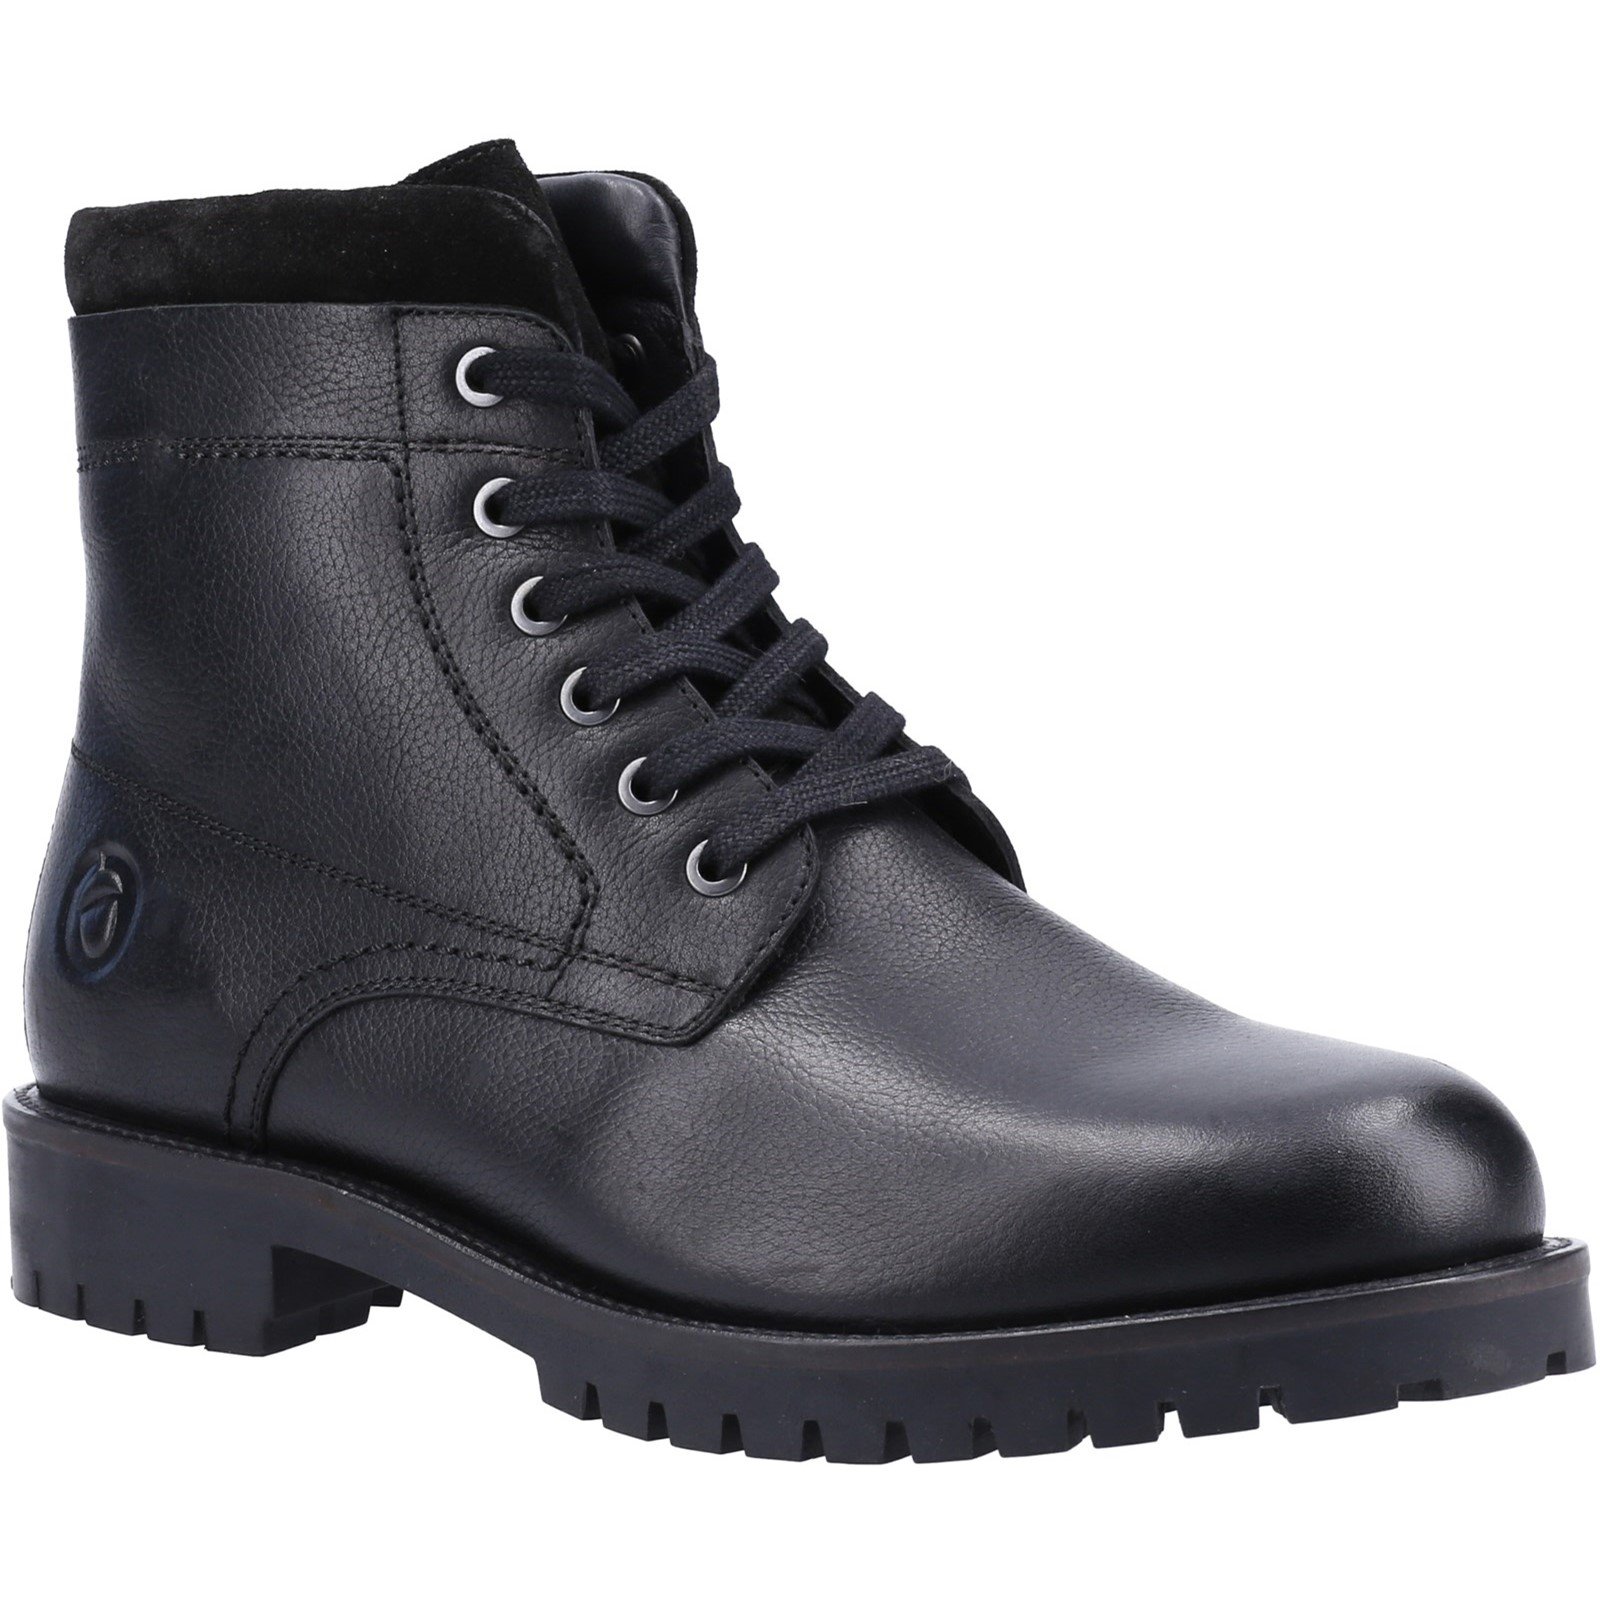 Cotswold Men's Thorsbury Lace Up Shoe Boot Various Colours 32963 - Black 9